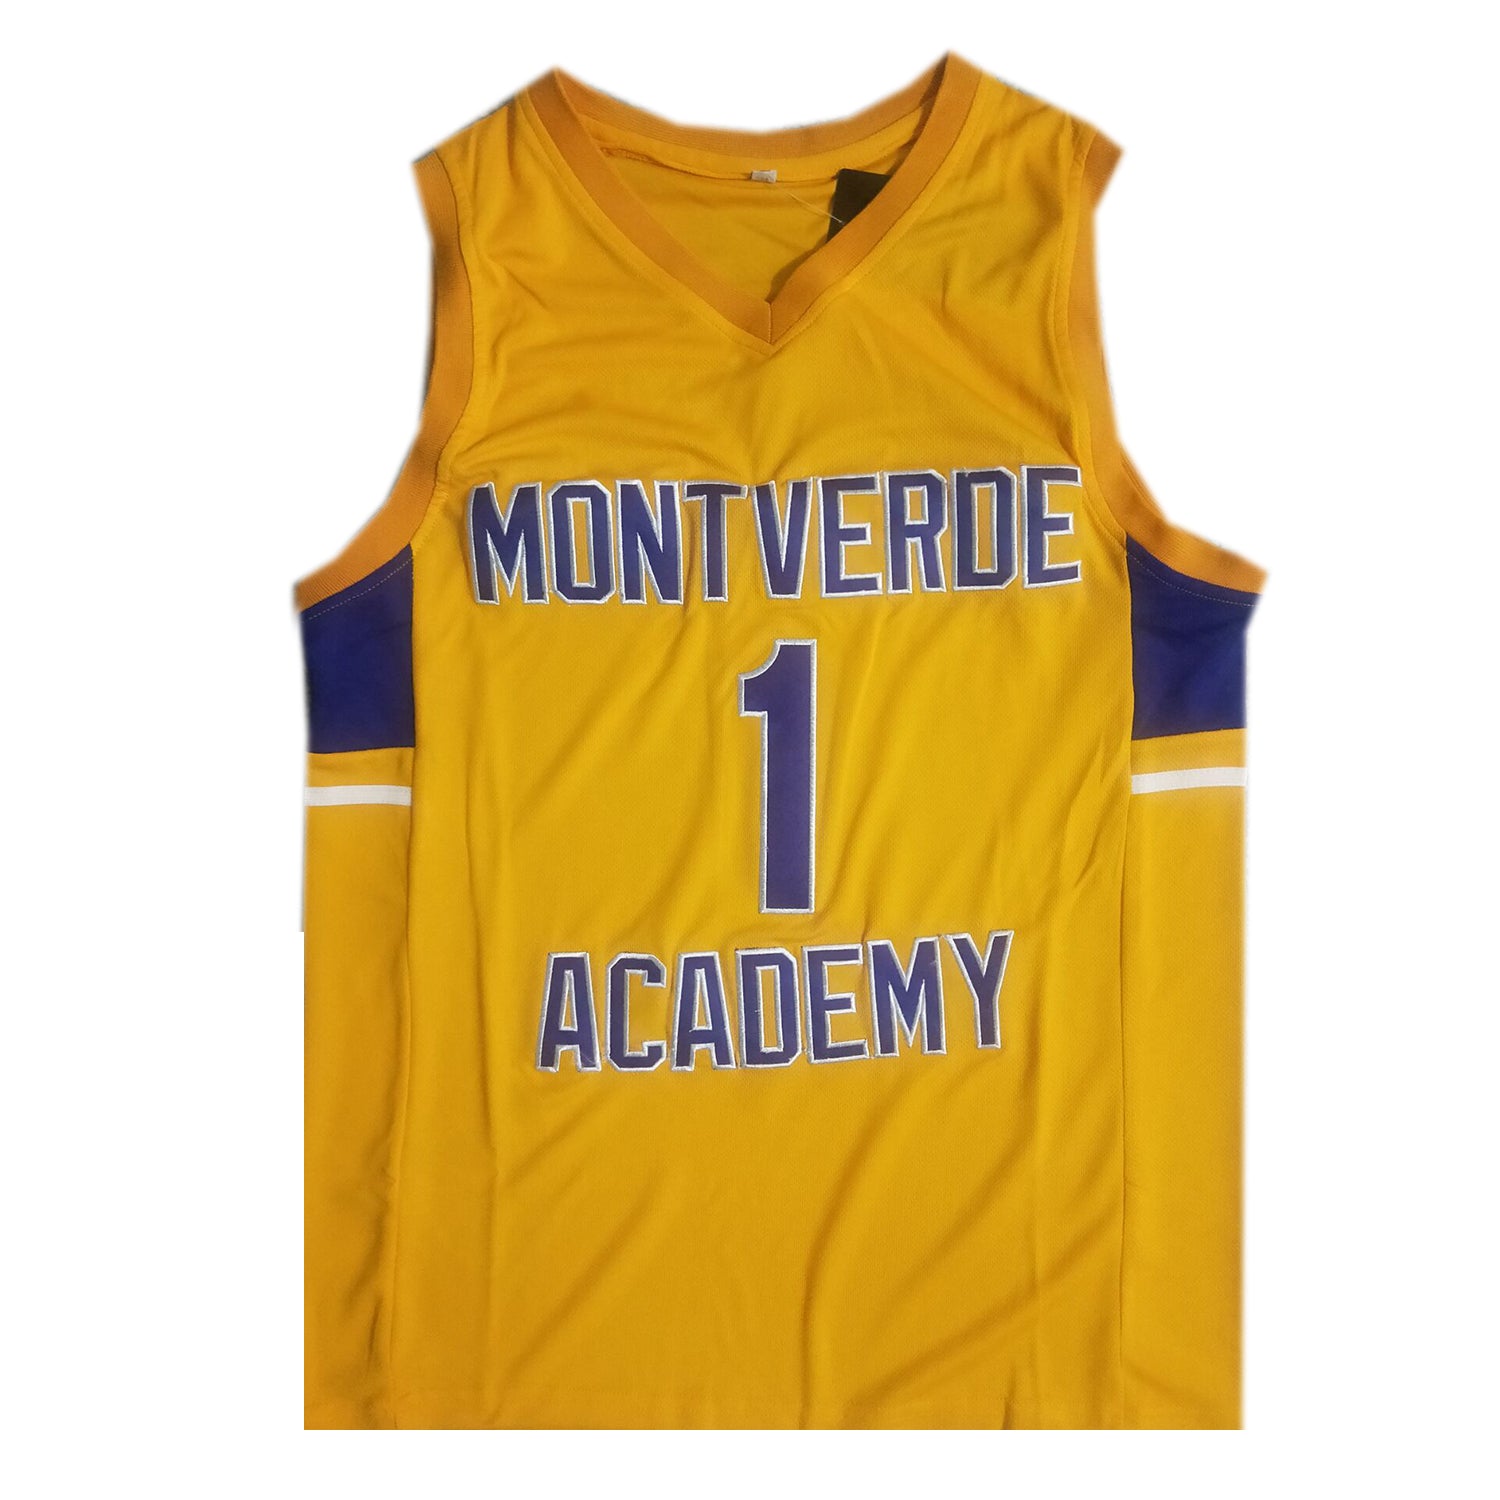 Cade Cunningham High School Throwback Montverde Academy Jersey